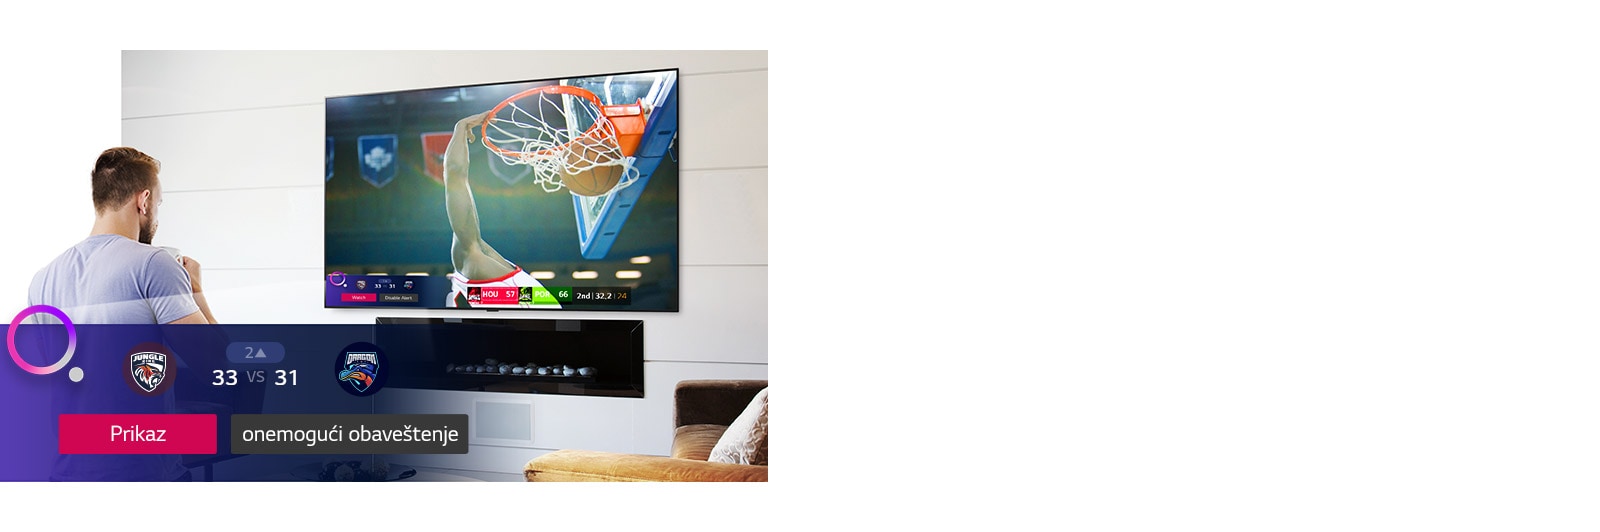 Schermo TV con una scena di una partita di basket con un avvertimento per iniziare il gioco